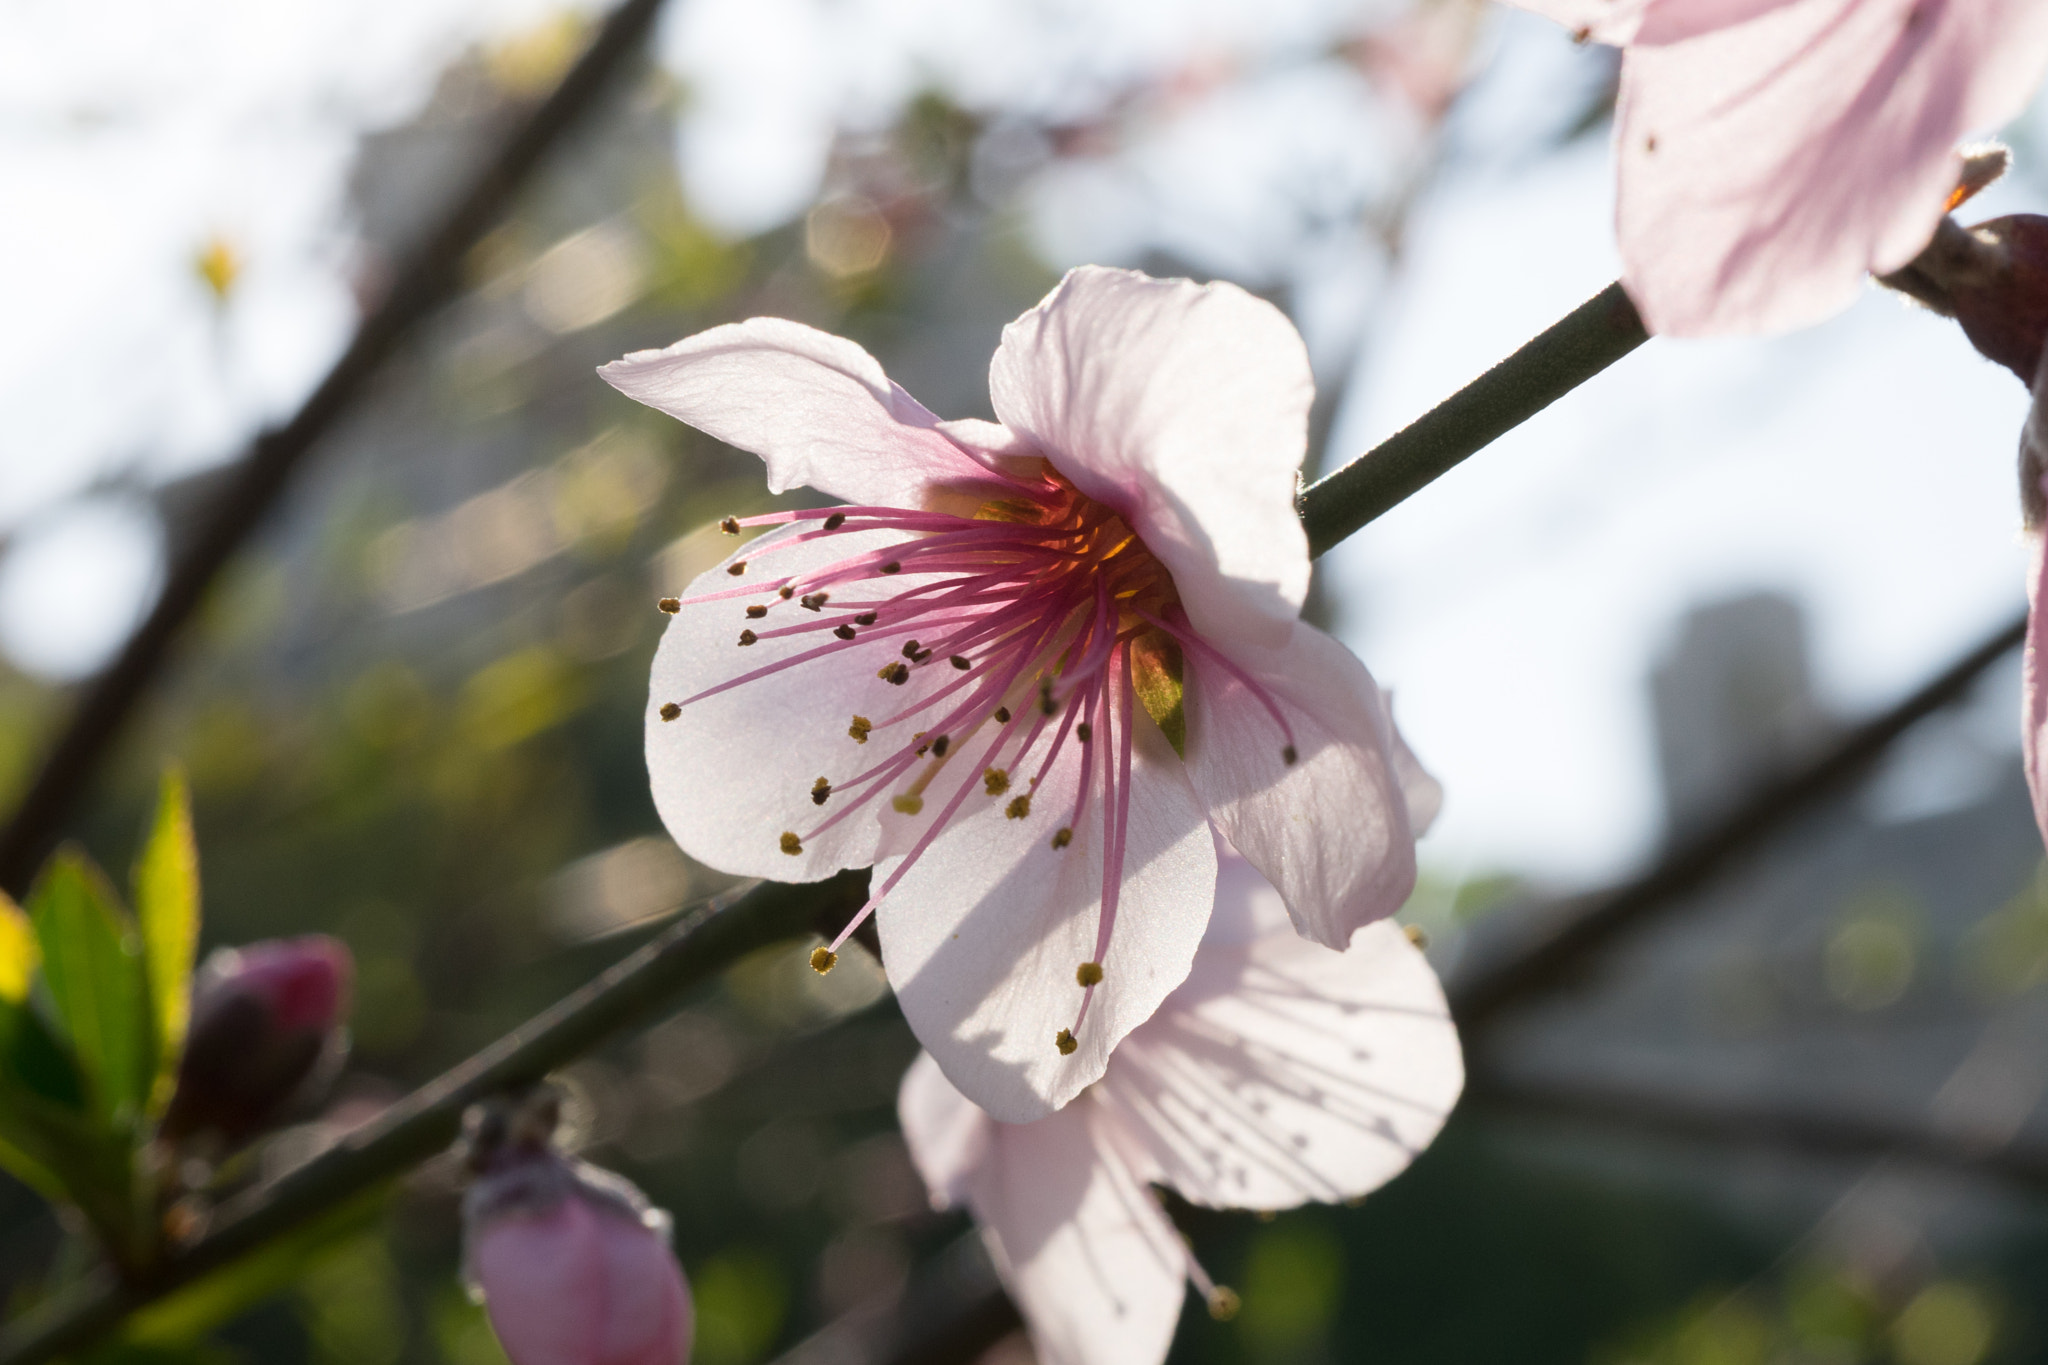 Sony a7 + Sony FE 50mm F2.8 Macro sample photo. Peach blossom #1 photography